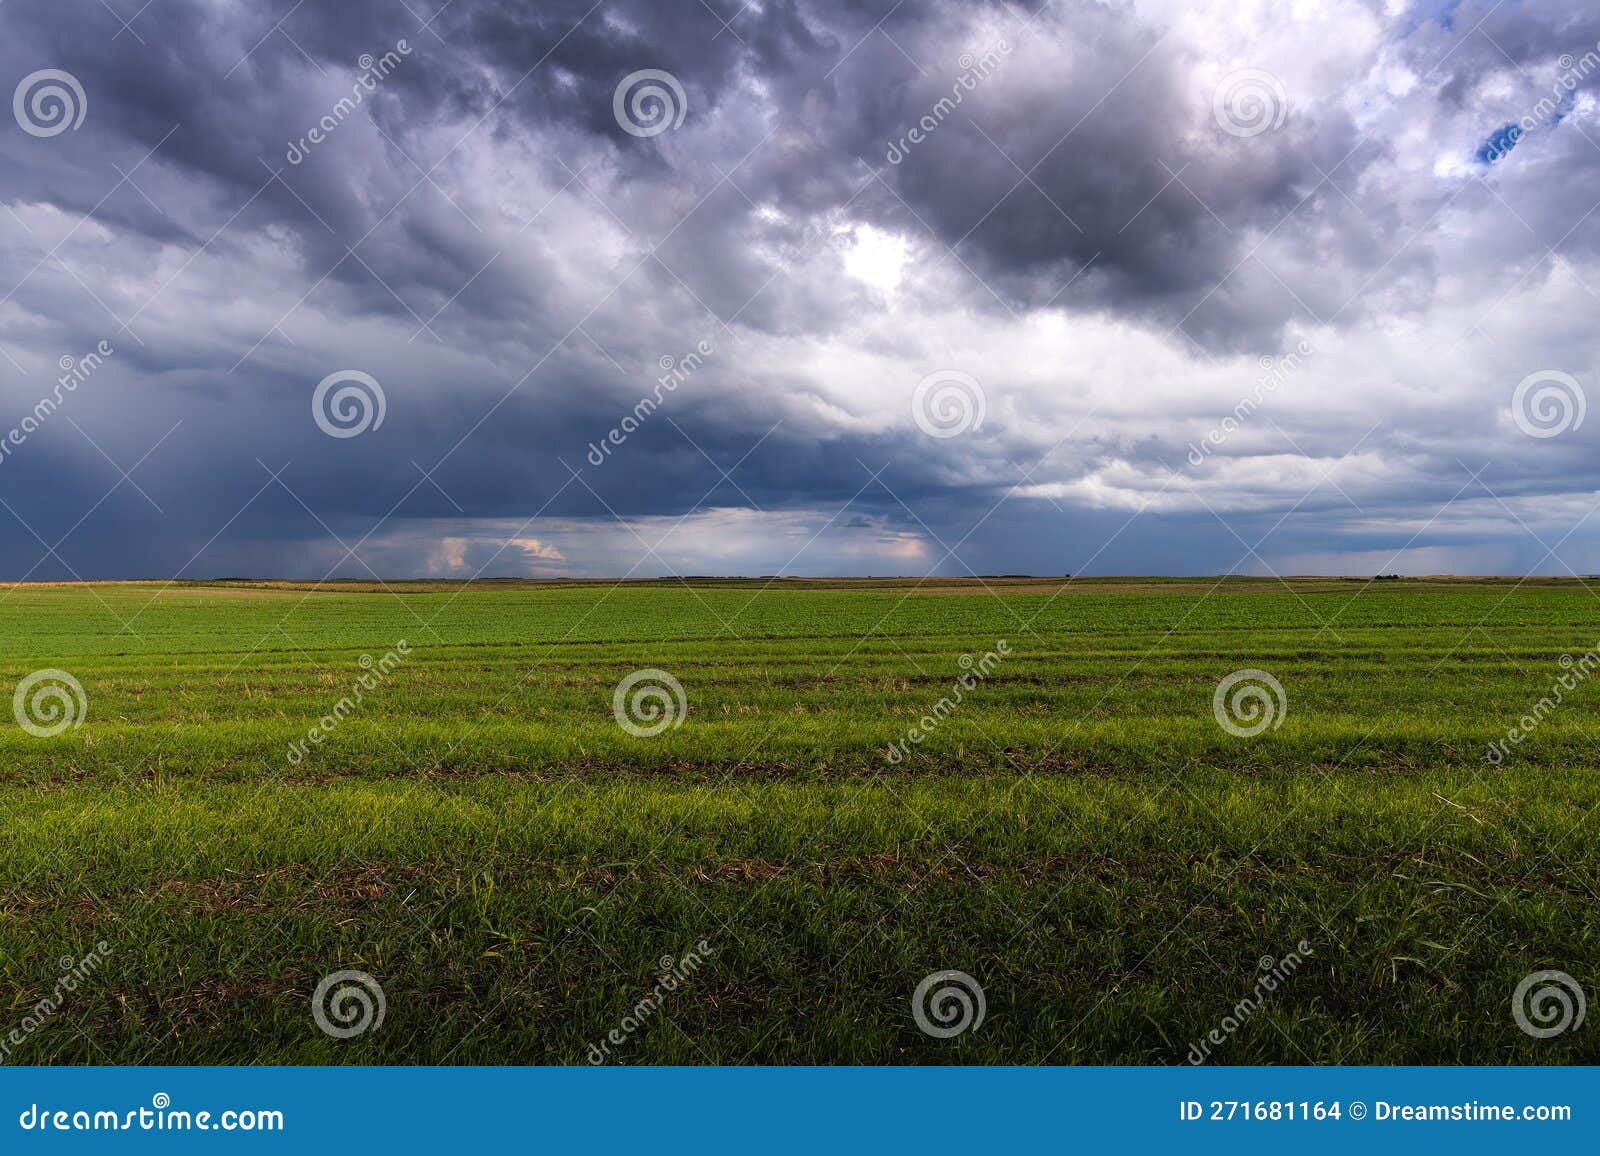 wheat field adn sky in early summer